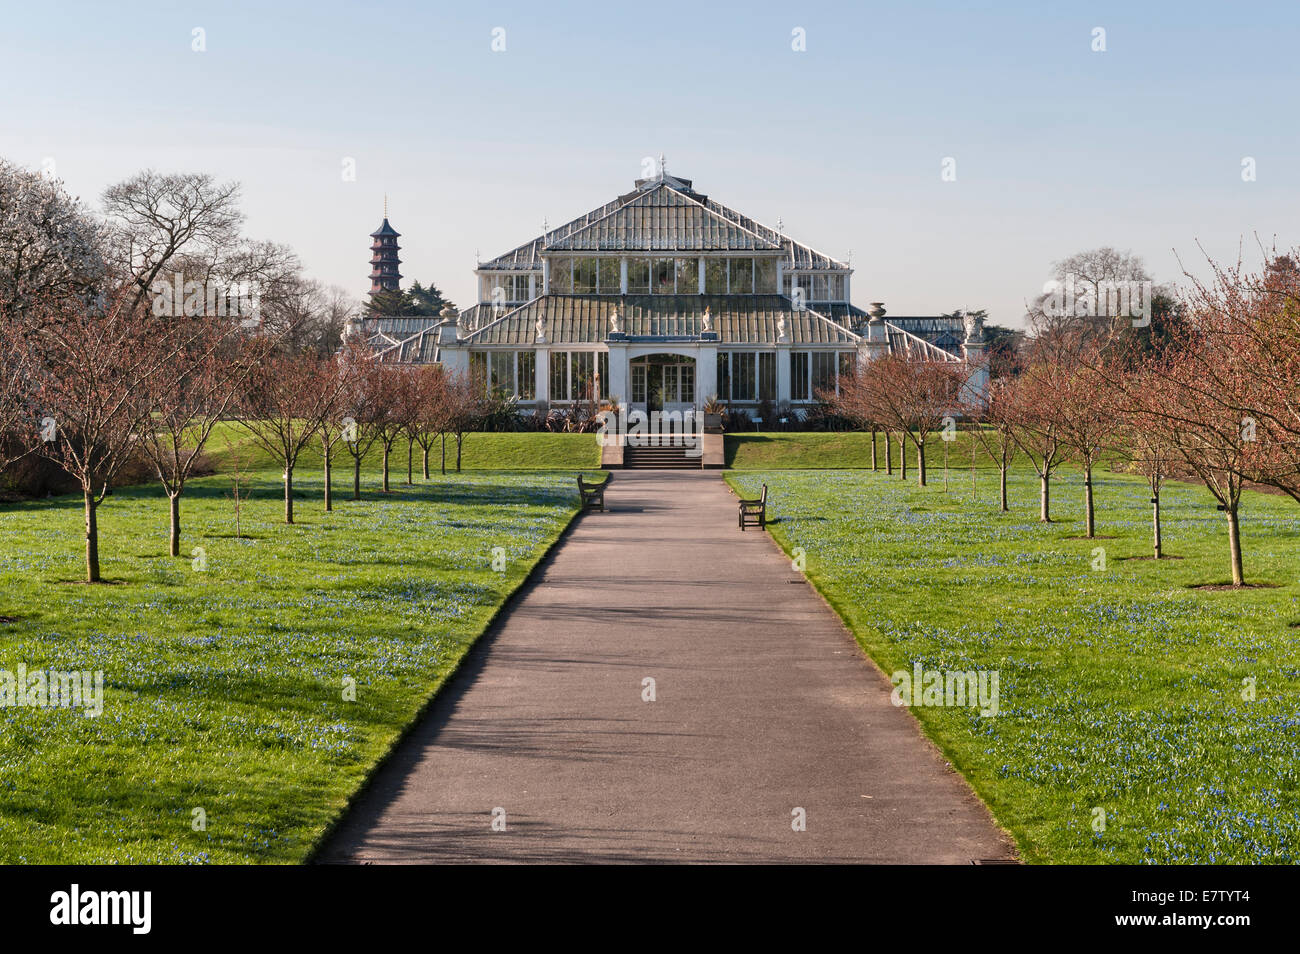 The Royal Botanic Gardens, Kew, Londres, Royaume-Uni. La maison Temperate en fer forgé et verre, construite par Decimus Burton, a ouvert ses portes en 1863 Banque D'Images